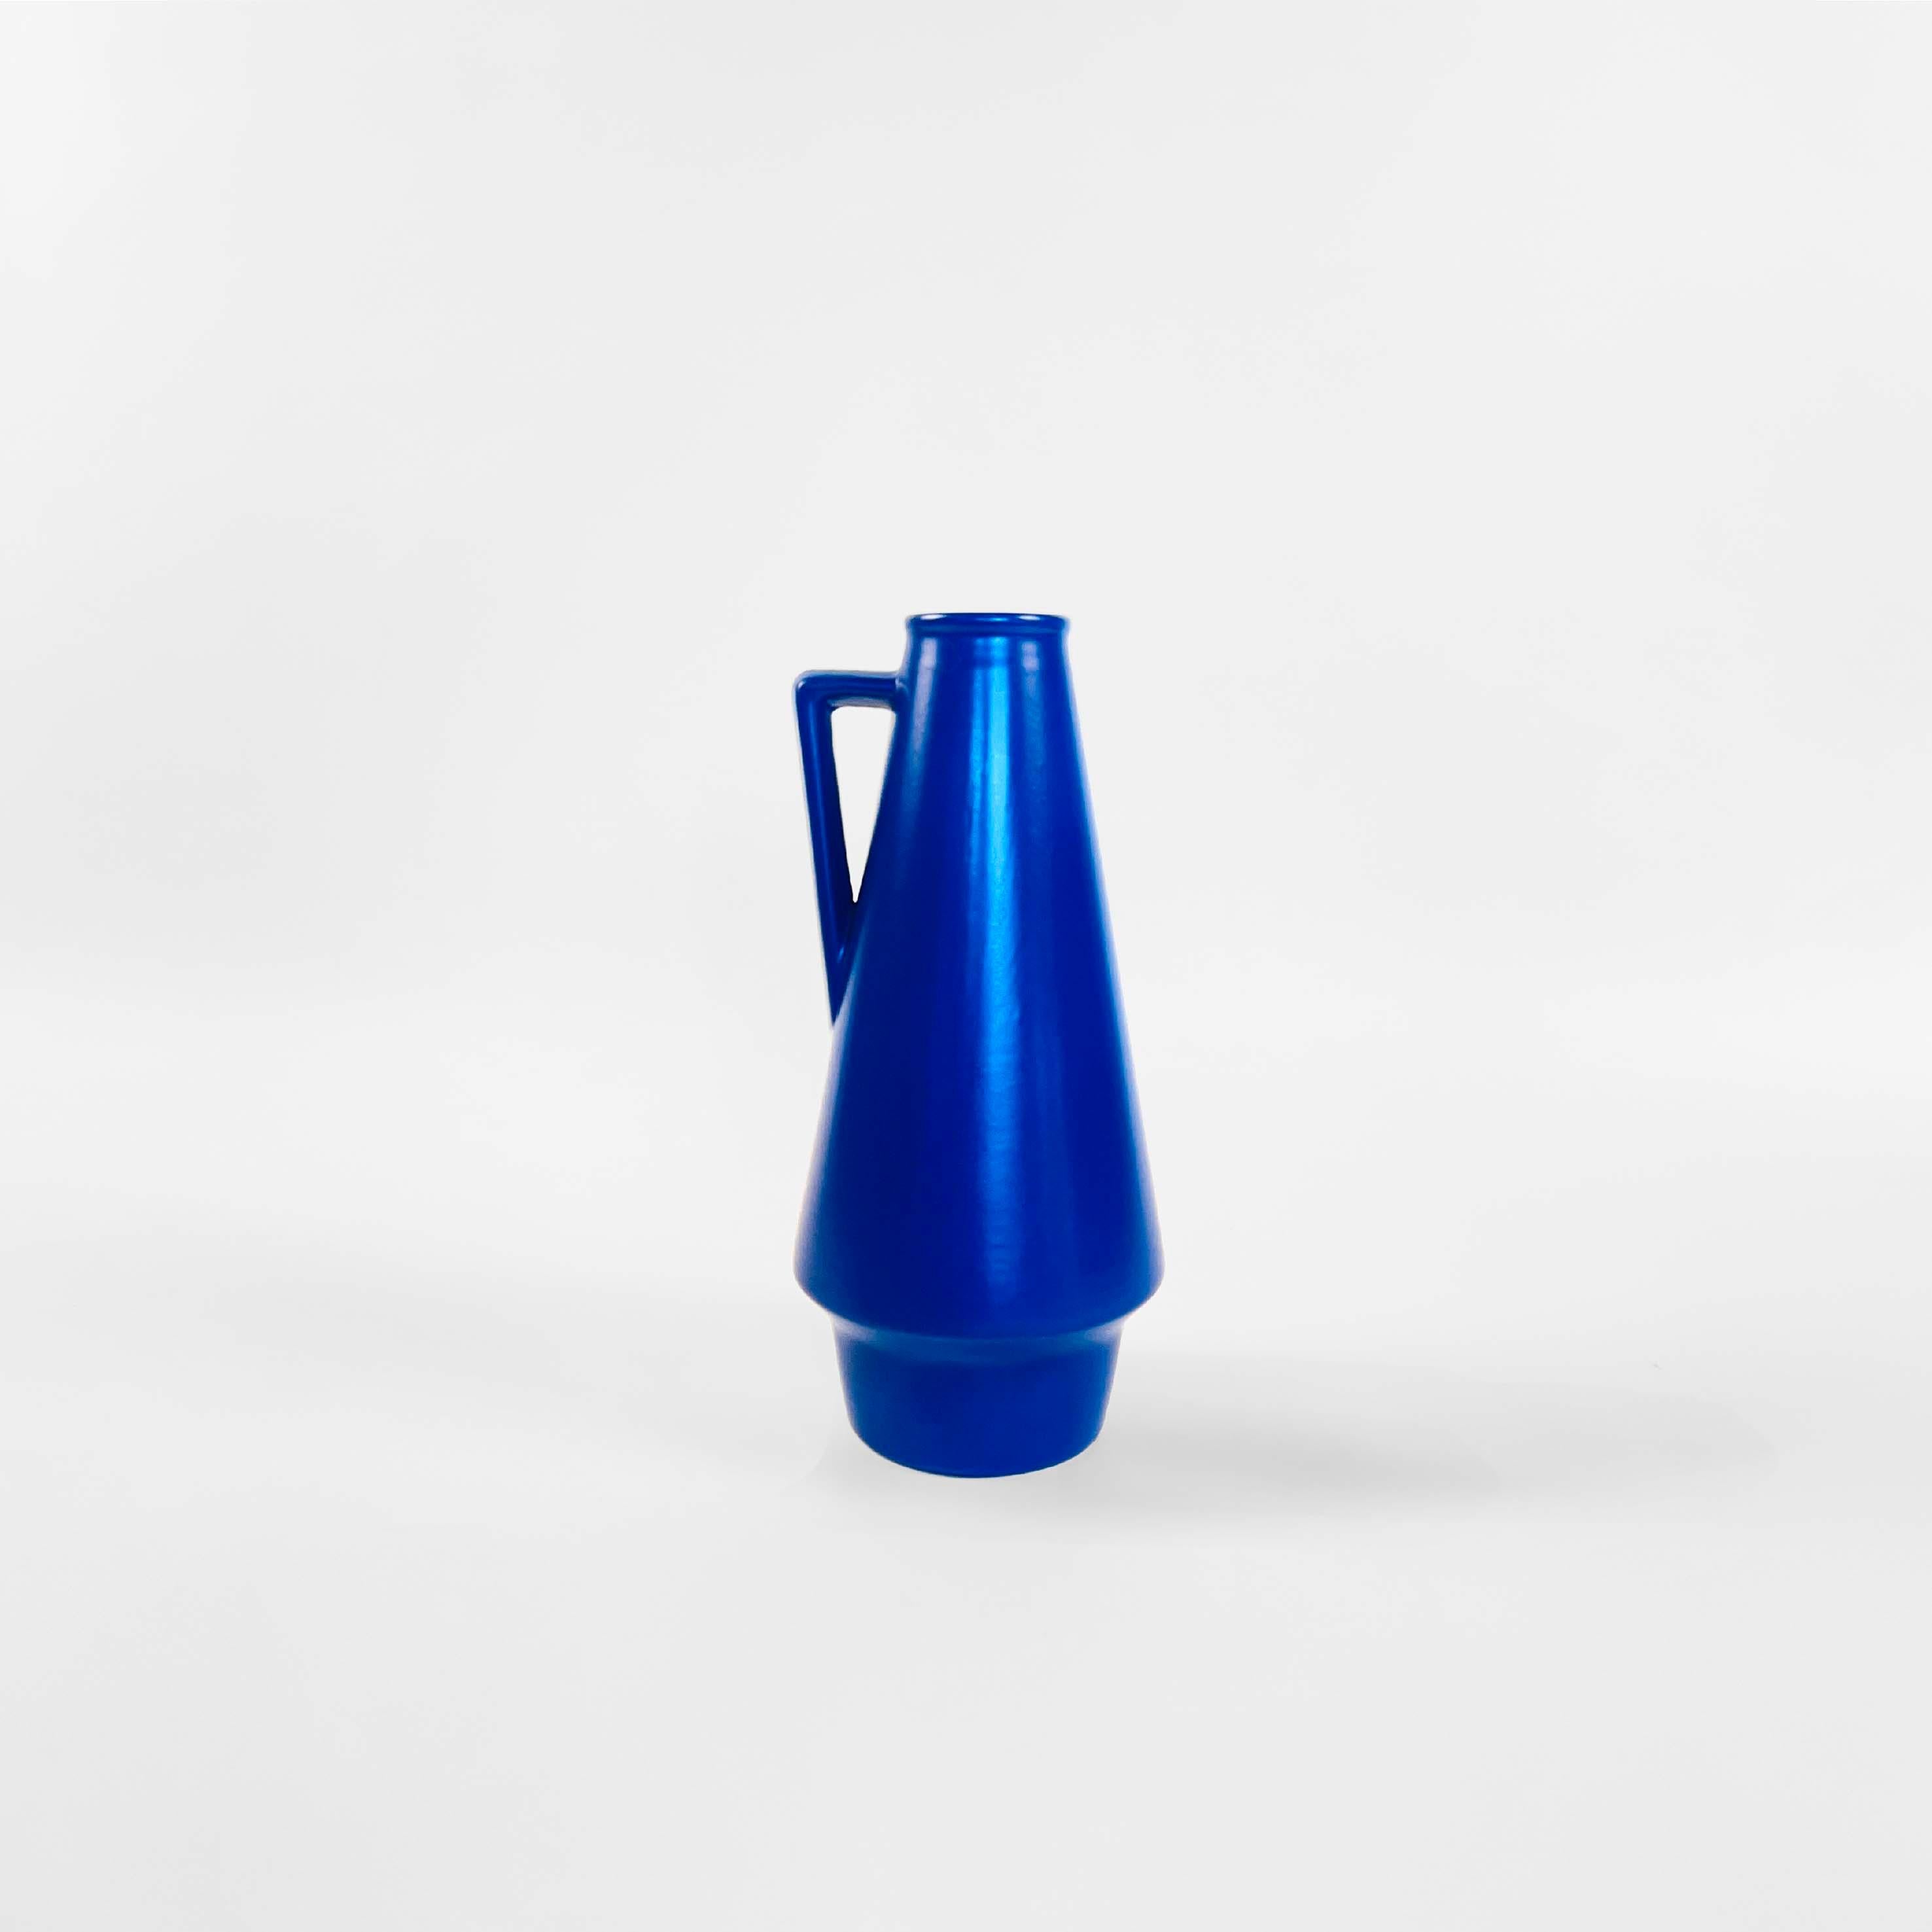 Vase en poterie en bleu Klein. Forme conique avec poignée triangulaire. Allemagne 1960.